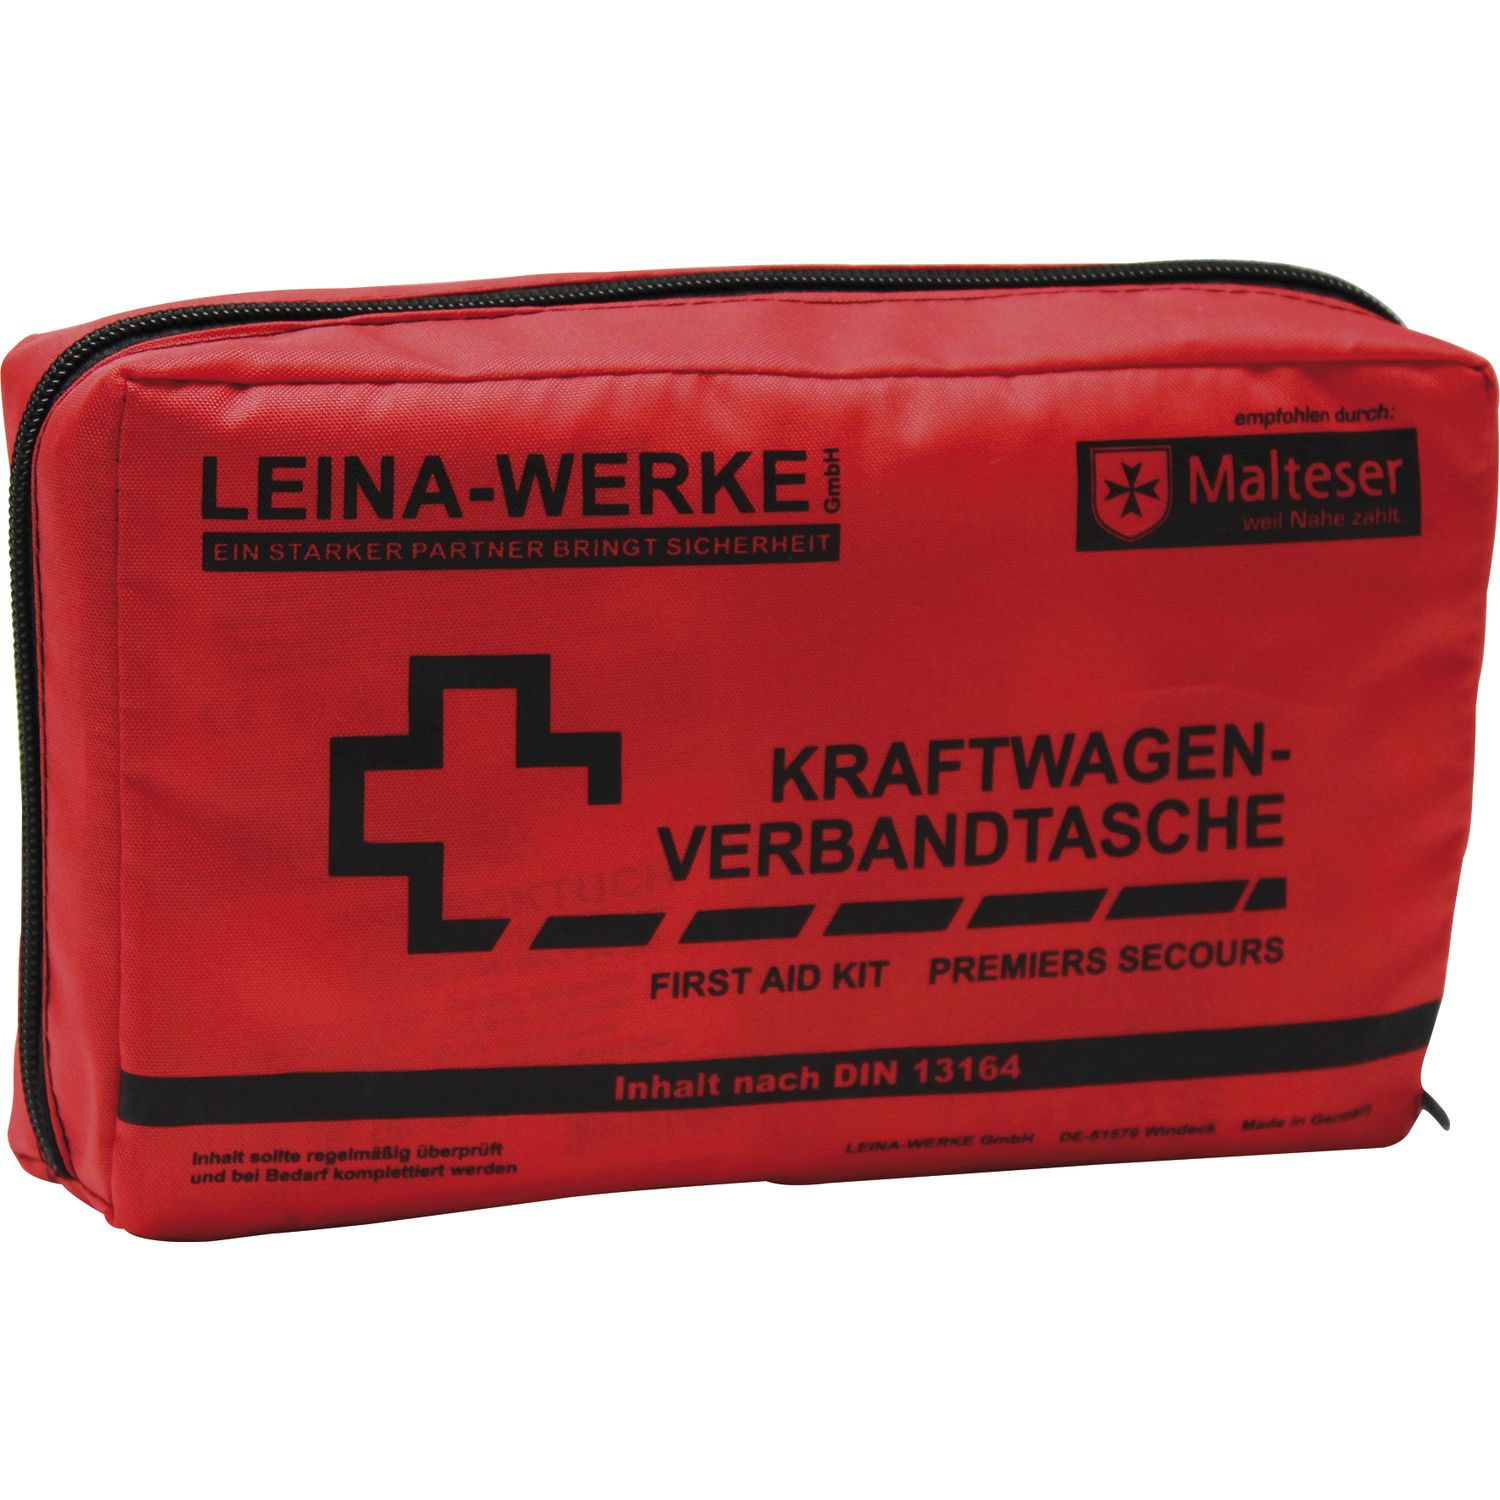 LEINA KFZ-Verbandtasche Größe 215 x 55 x 130 mm rot